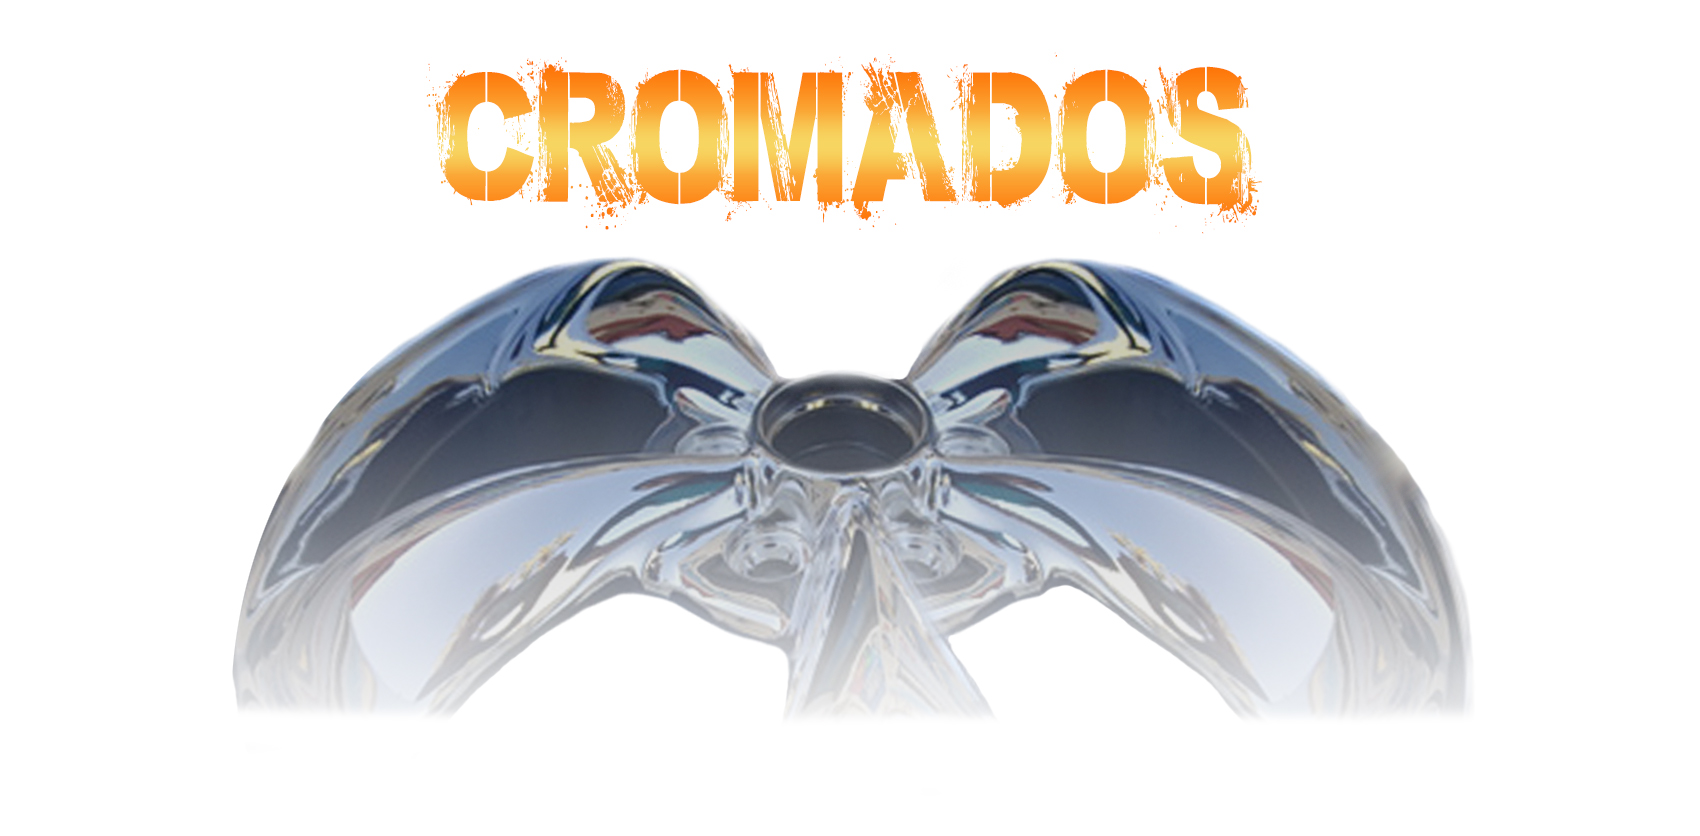 Cromados